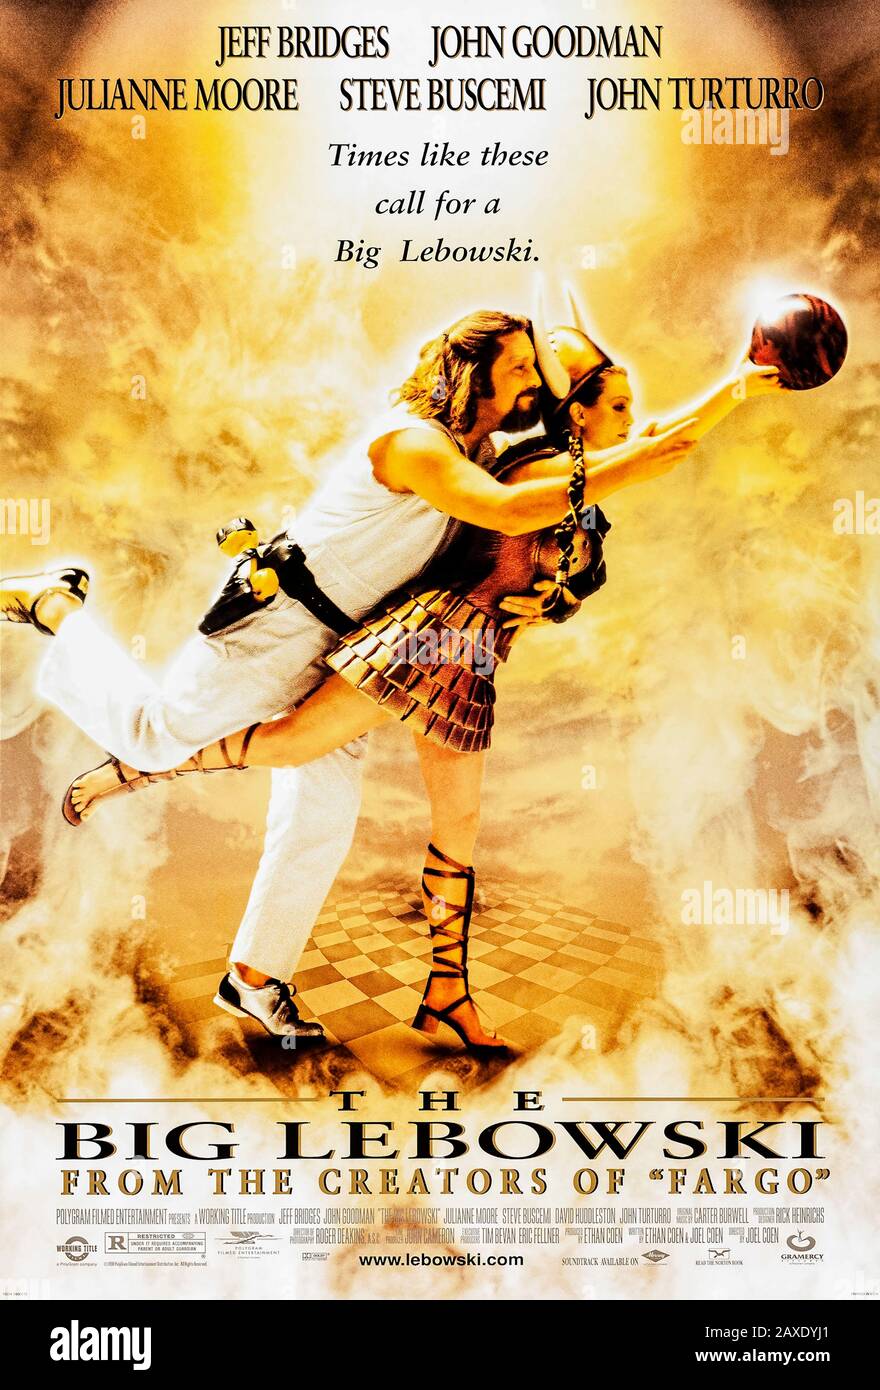 The Big Lebowski (1998) réalisé par Joel et Ethan Coen et avec Jeff Bridges, John Goodman, Julianne Moore et John Turturro. Culte classique sur "La Dude" et son voyage pour compensation pour son tapis ruiné. Banque D'Images